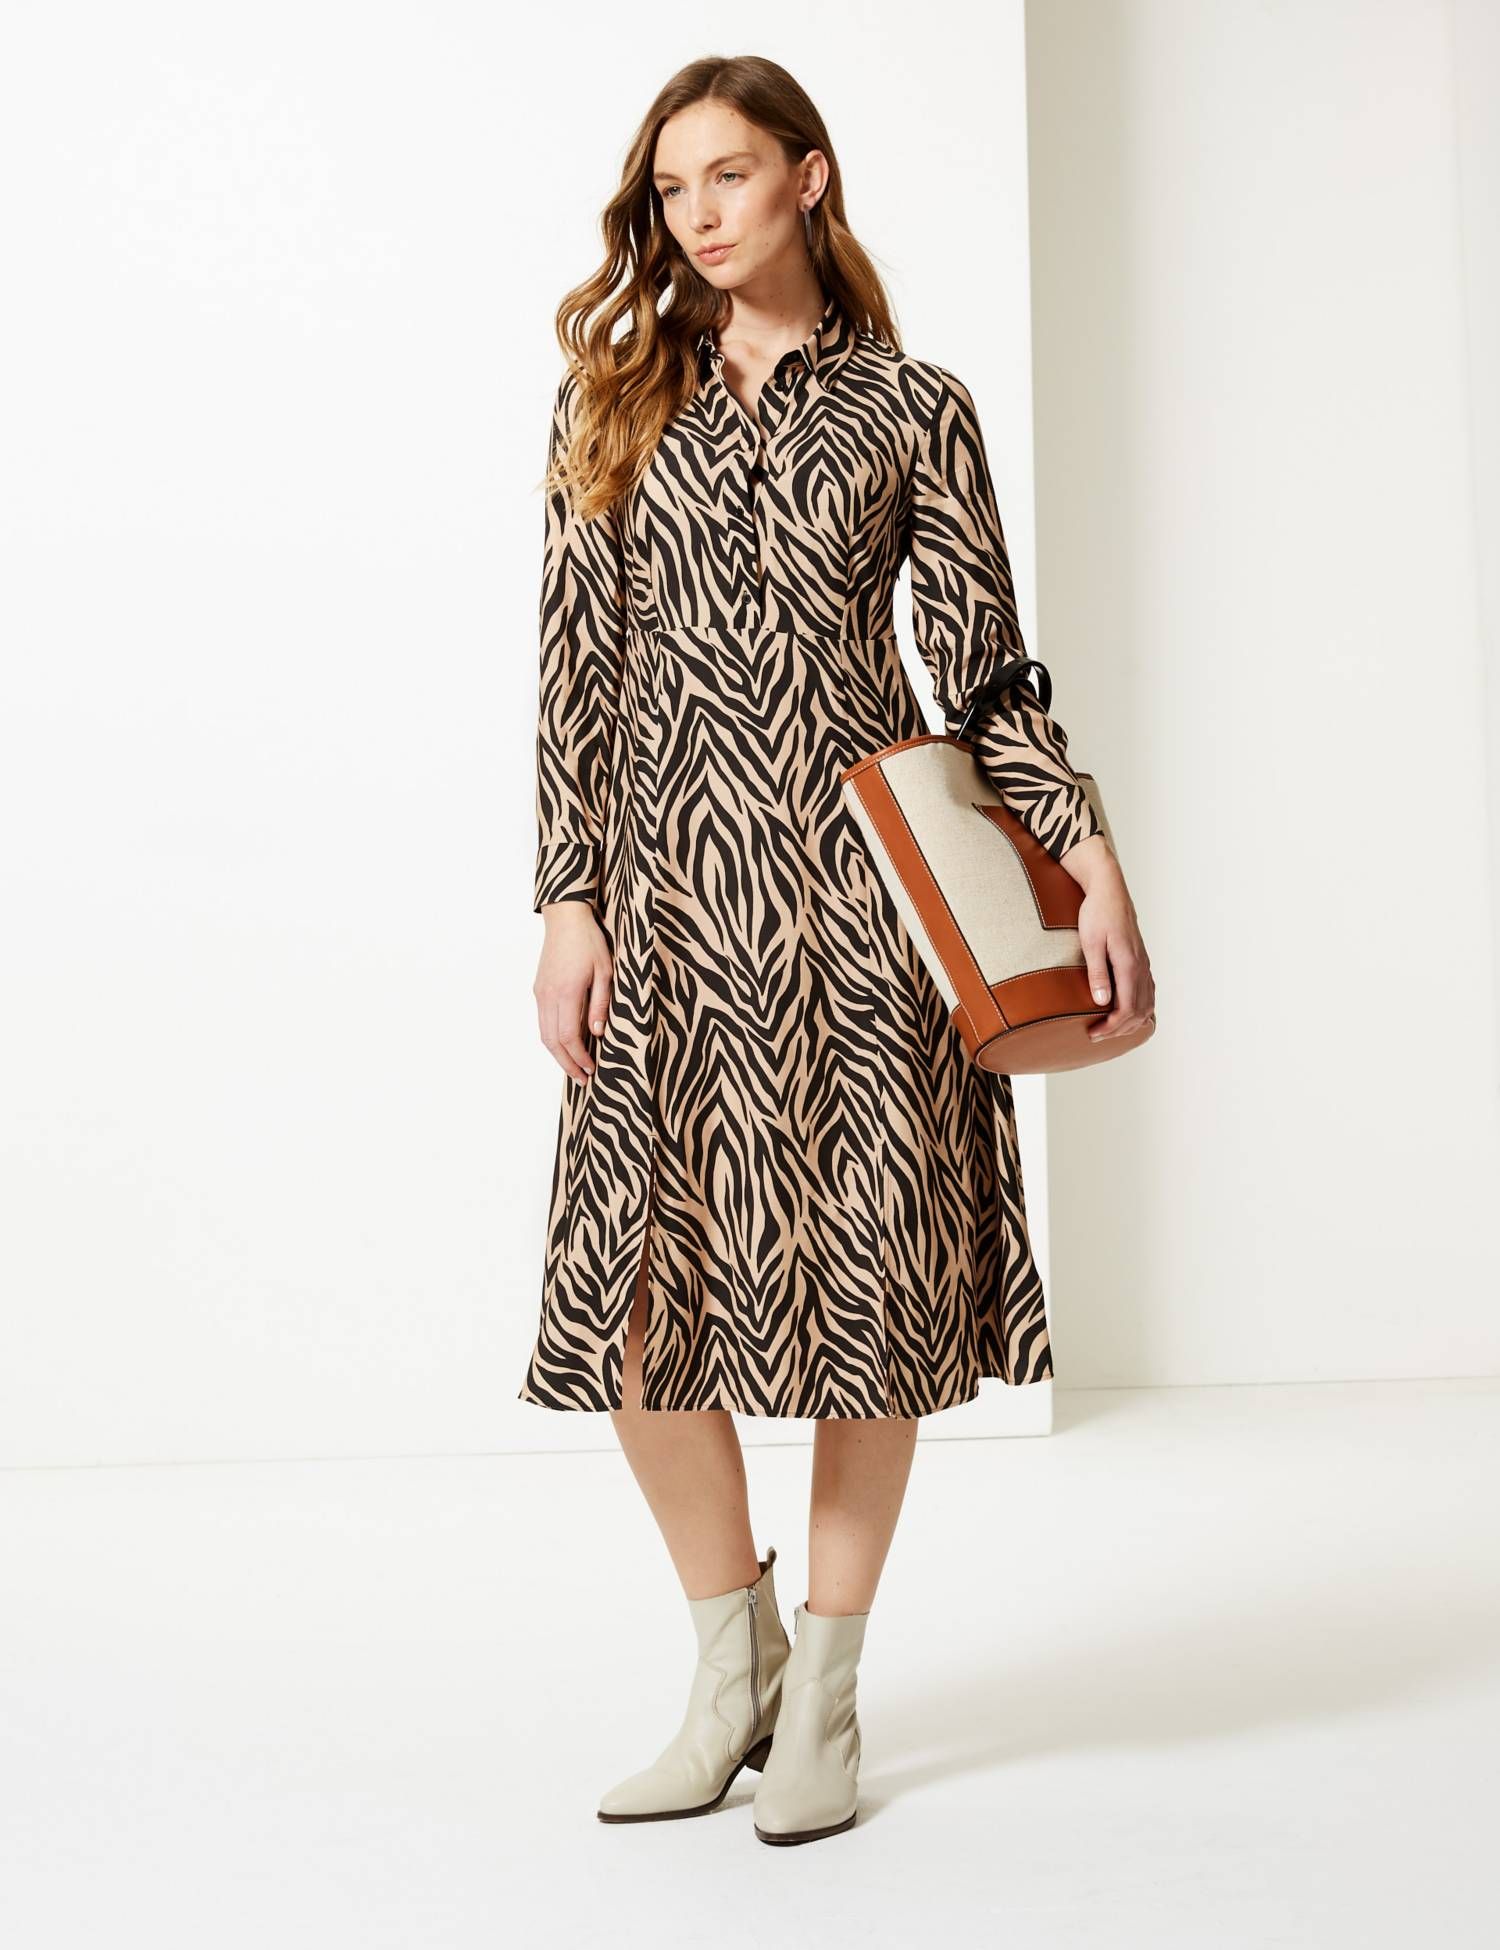 pink leopard print dress m&s